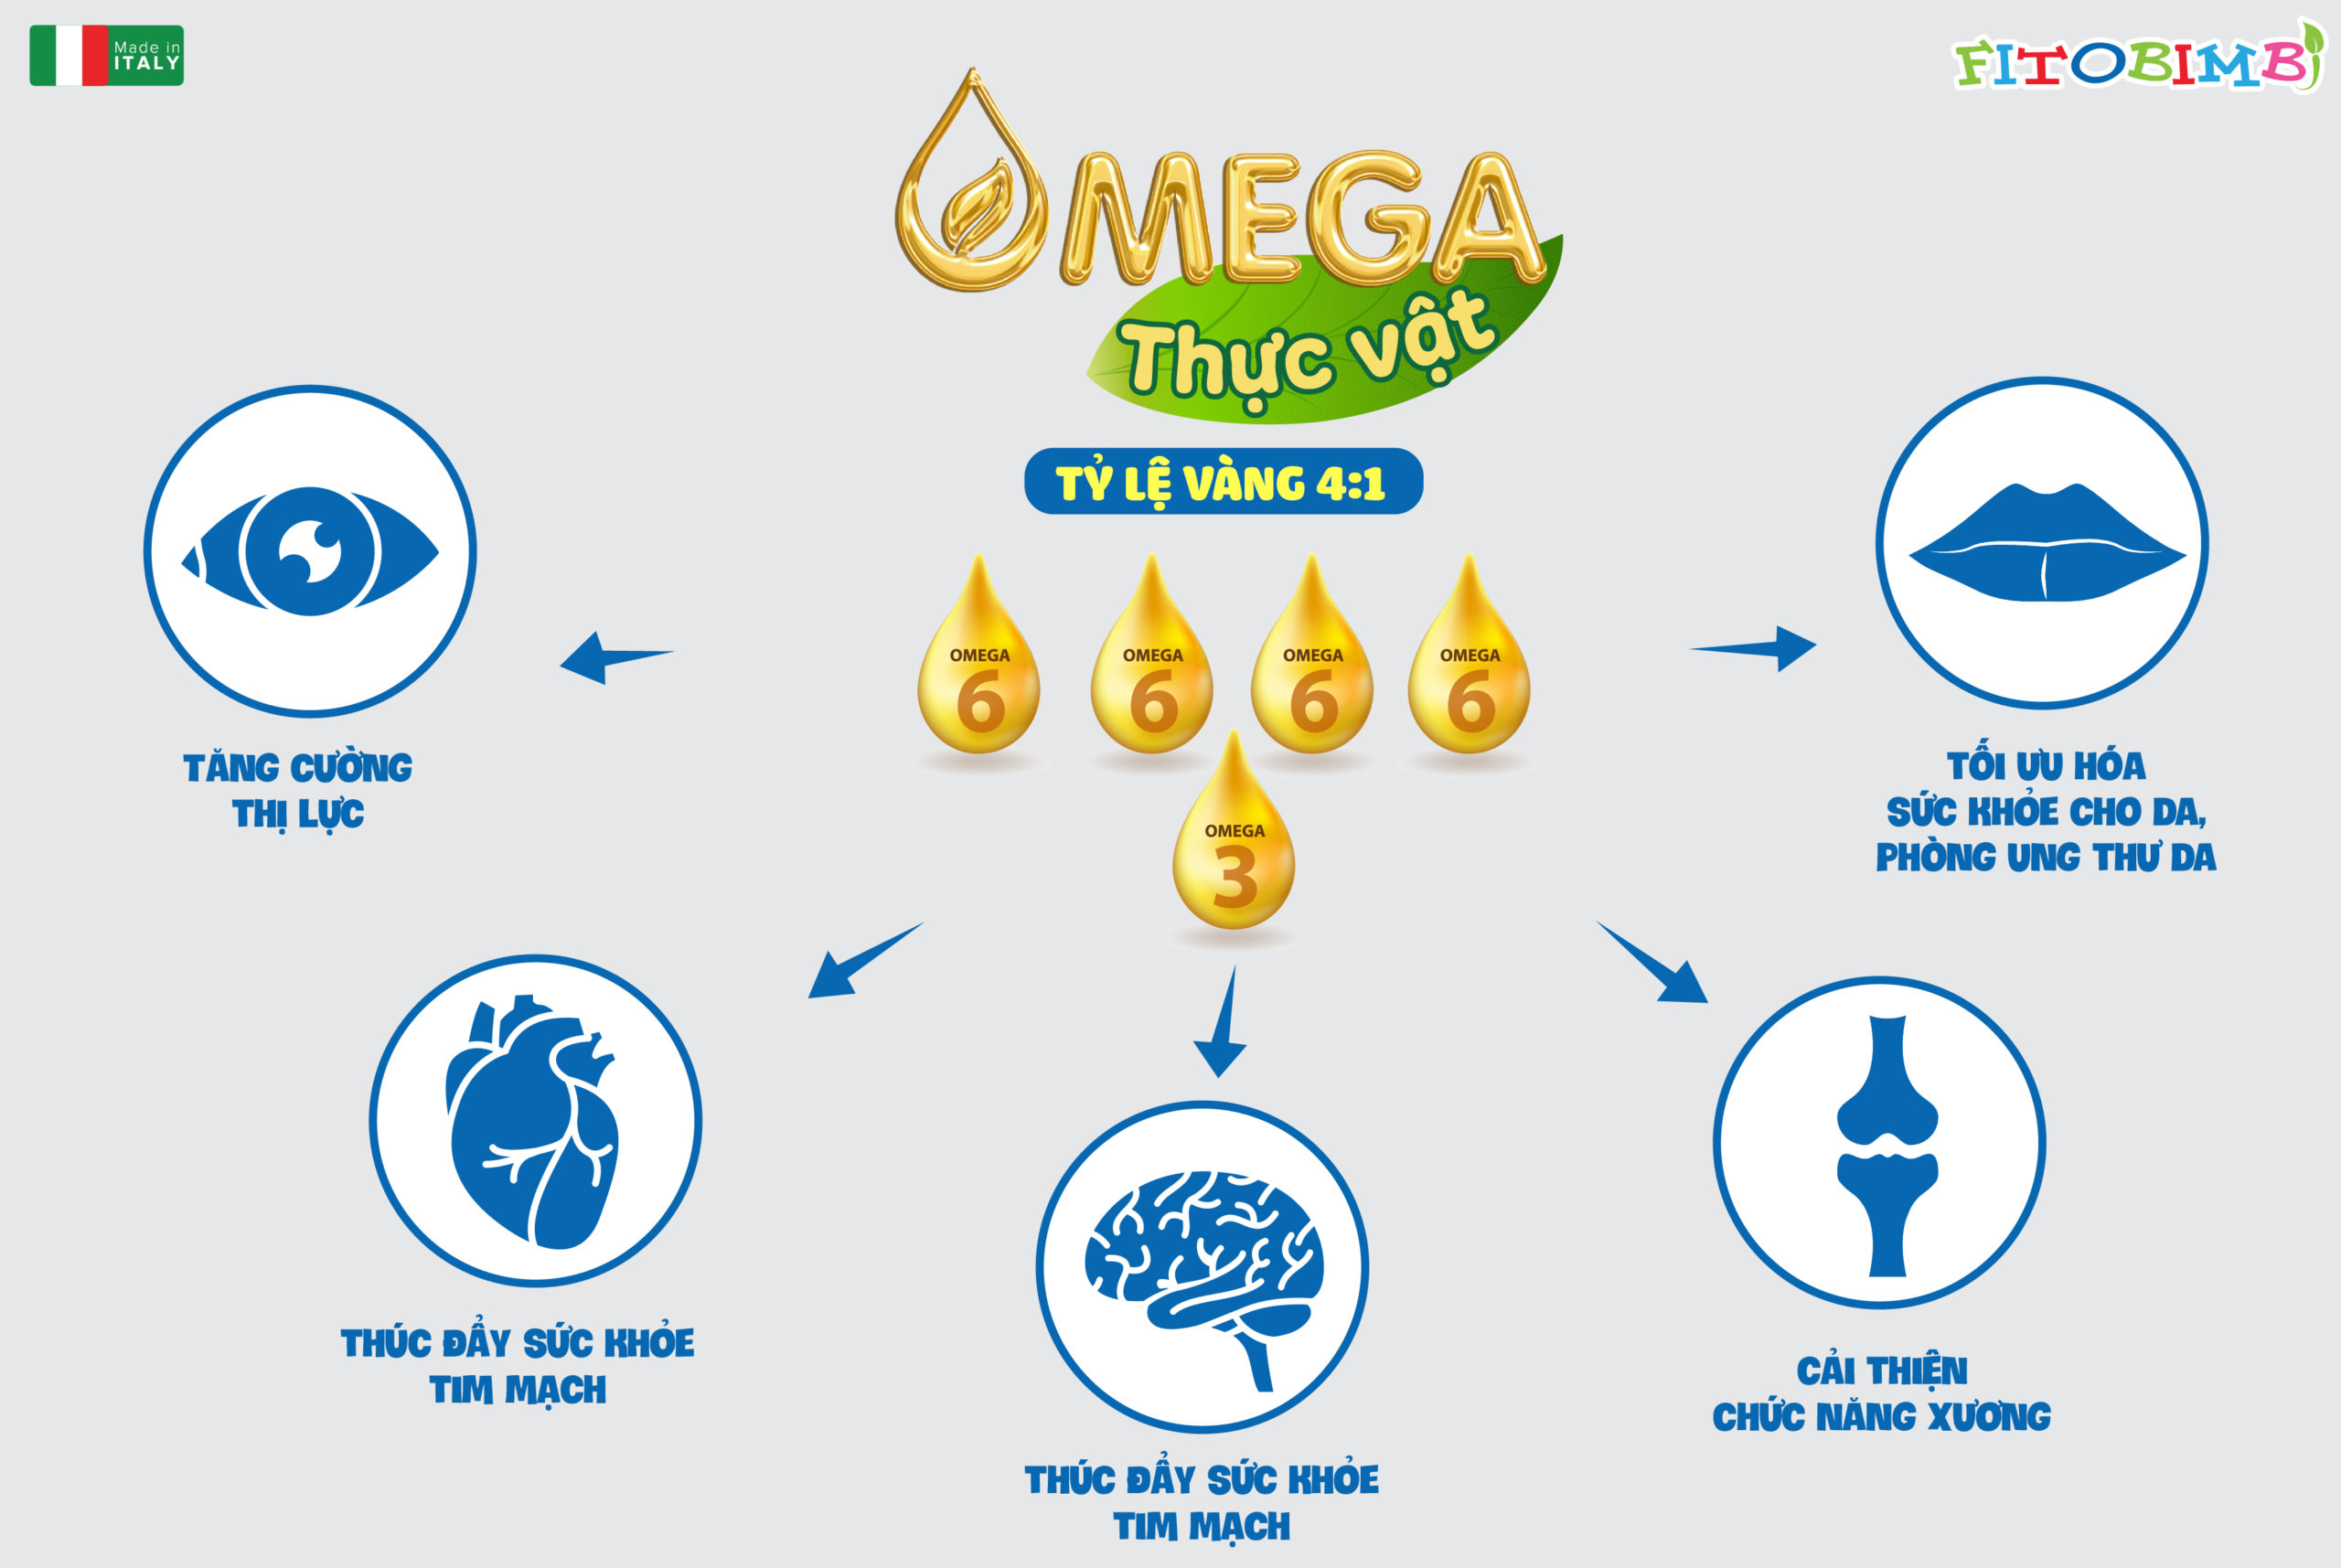 Tỷ lệ 4:1 của omega 3/omega 6 là tỷ lệ “vàng” cho não bộ của trẻ 1